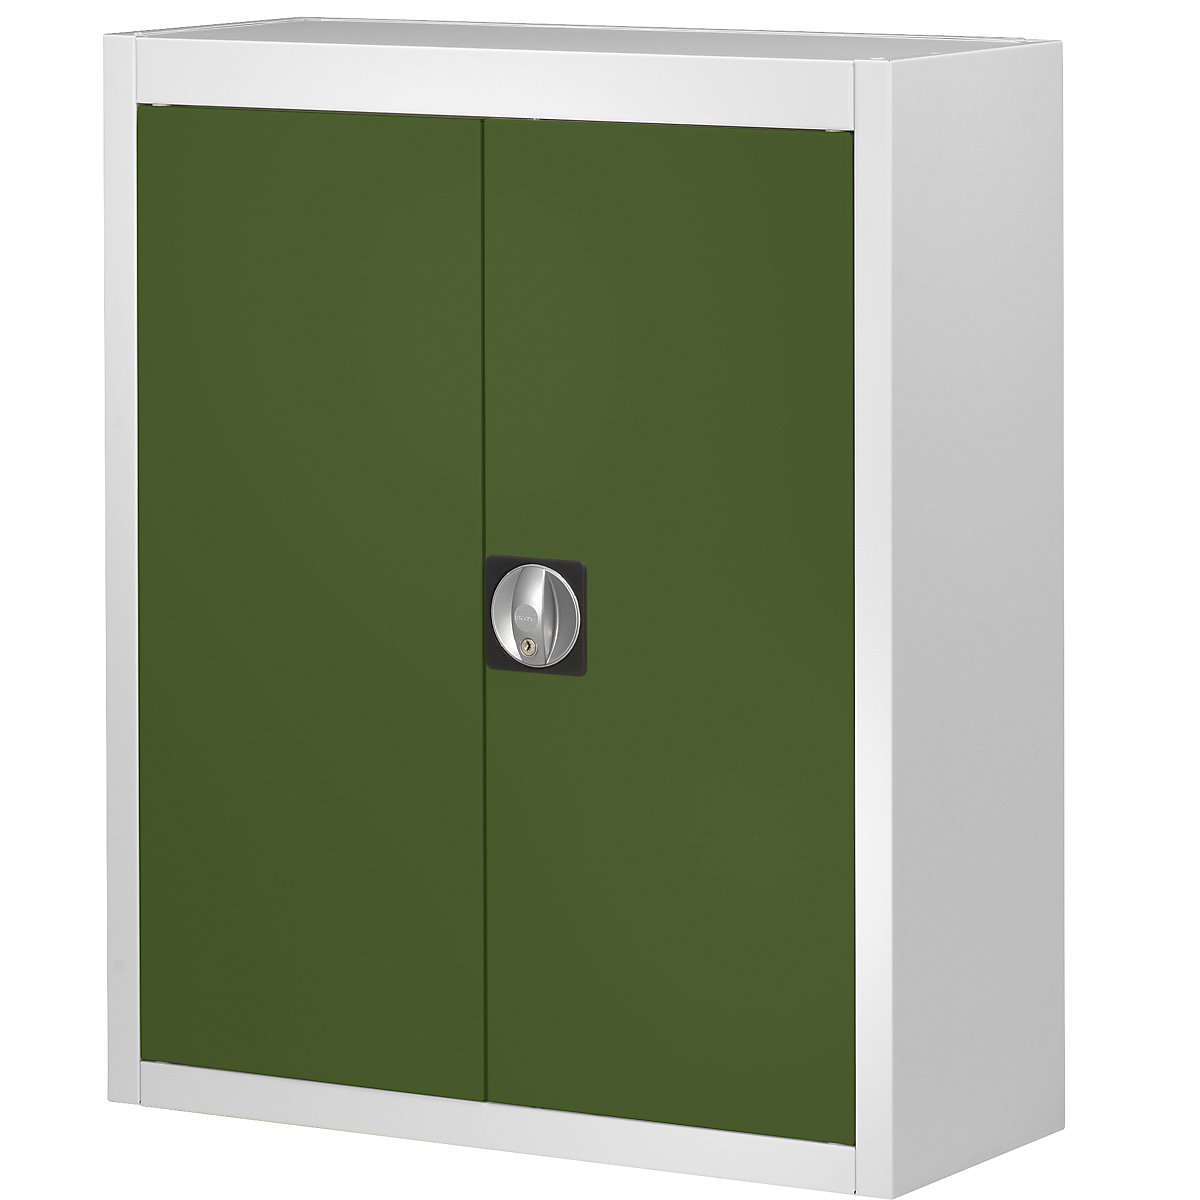 Skladová skříň, bez přepravek s viditelným obsahem – mauser, v x š x h 820 x 680 x 280 mm, dvoubarevná, korpus šedý, dveře zelené, od 3 ks-3